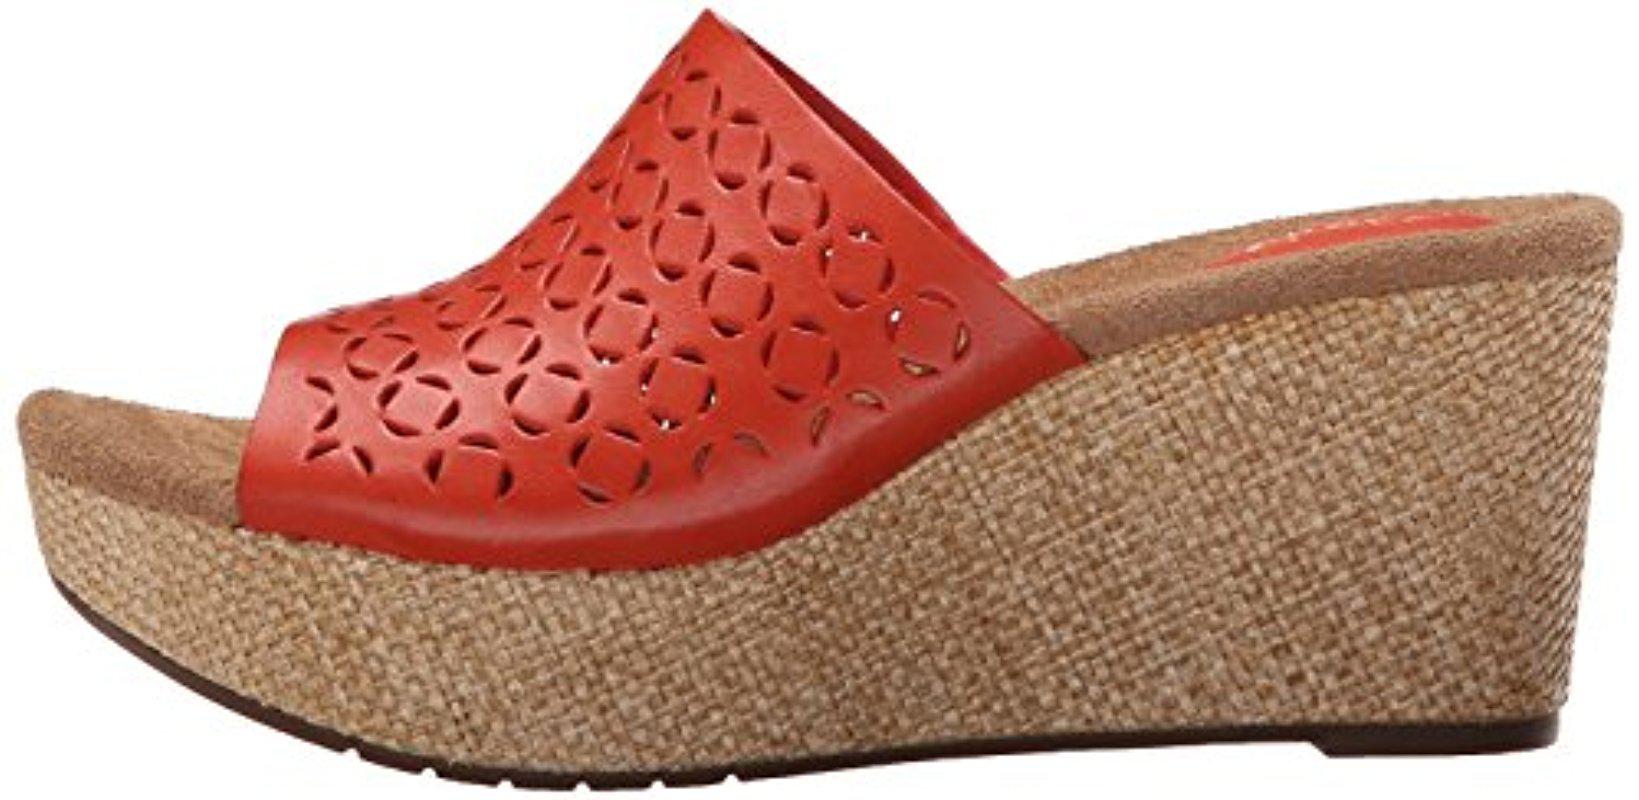 clarks artisan women's caslynn dylan wedge sandals